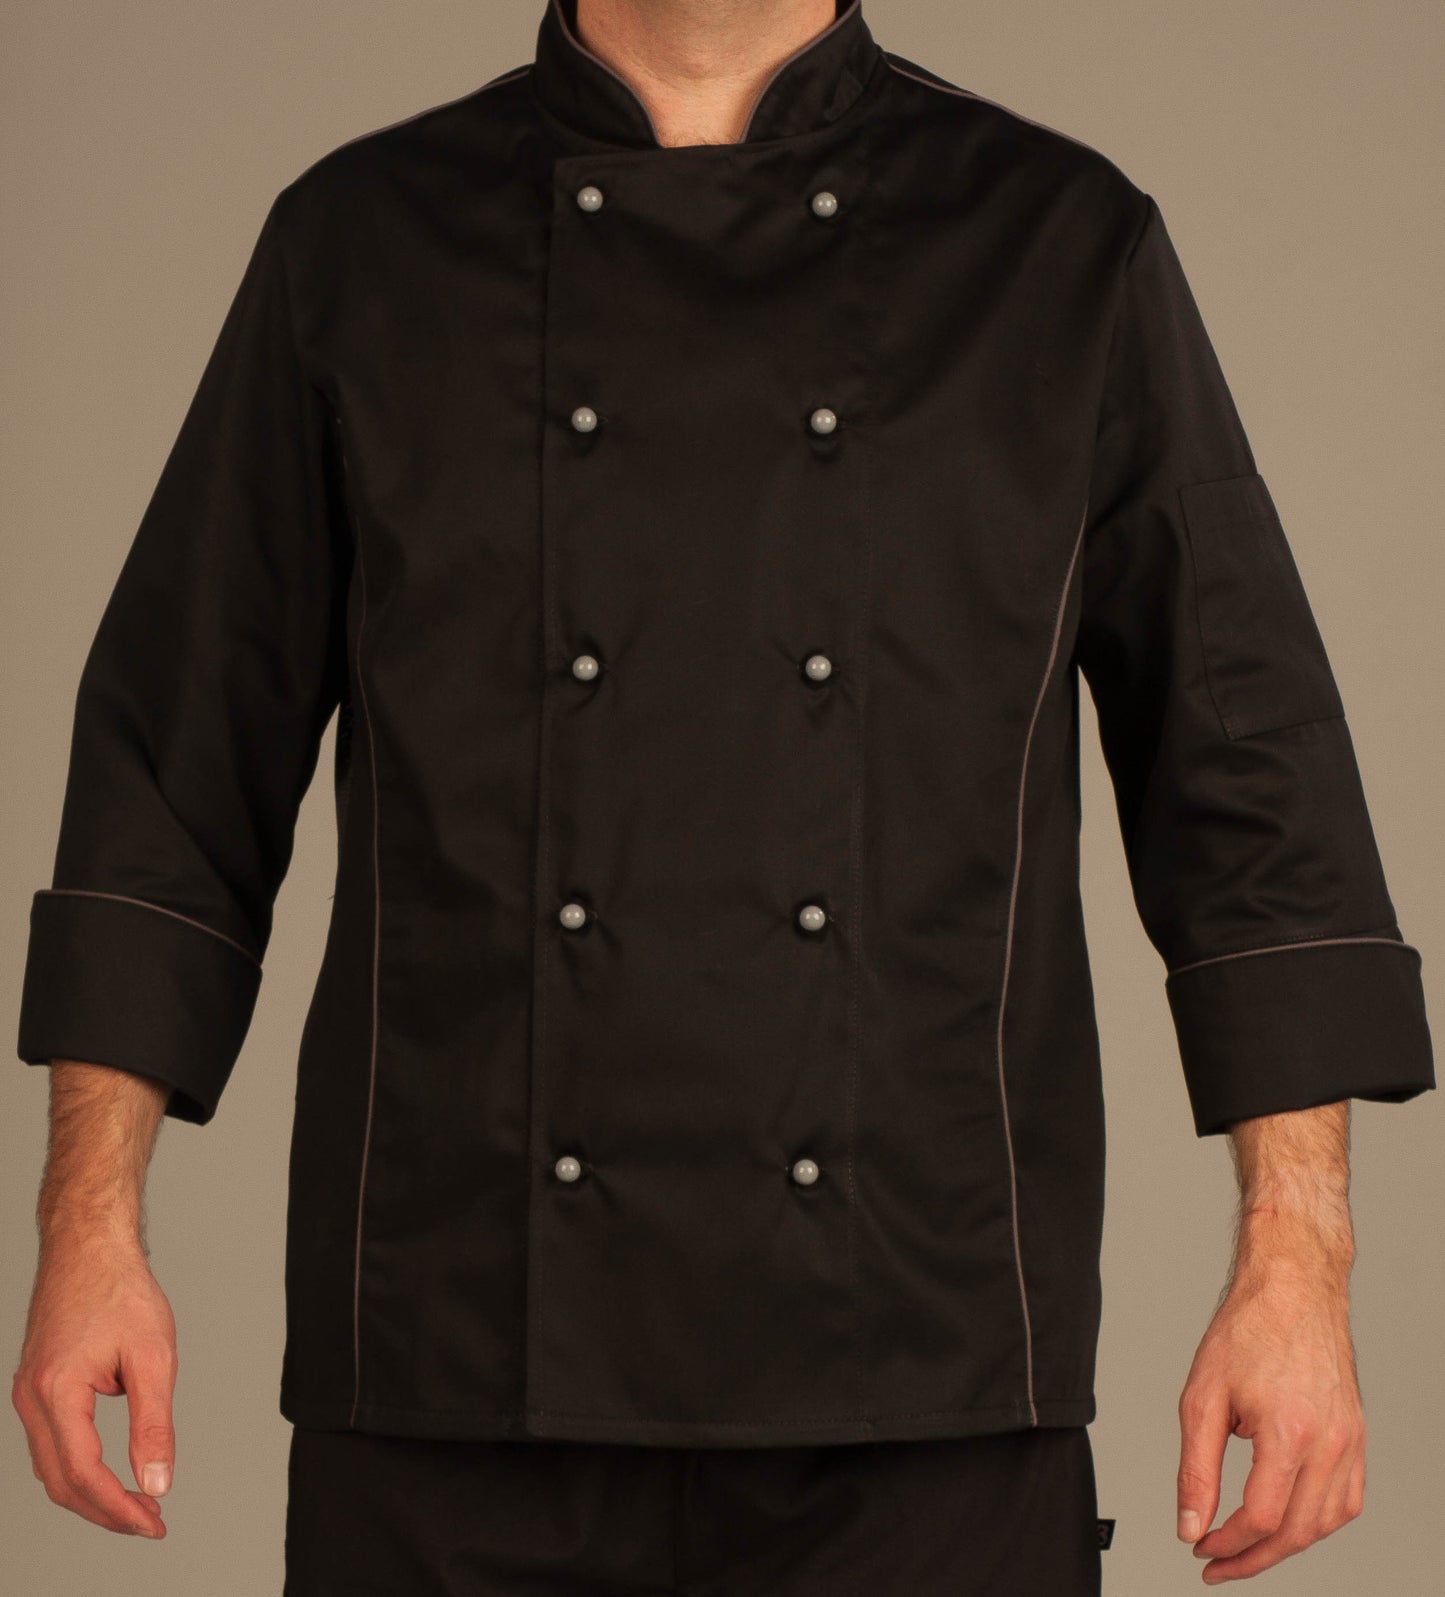 Jacob Chef Jacket 3/4 Sleeves